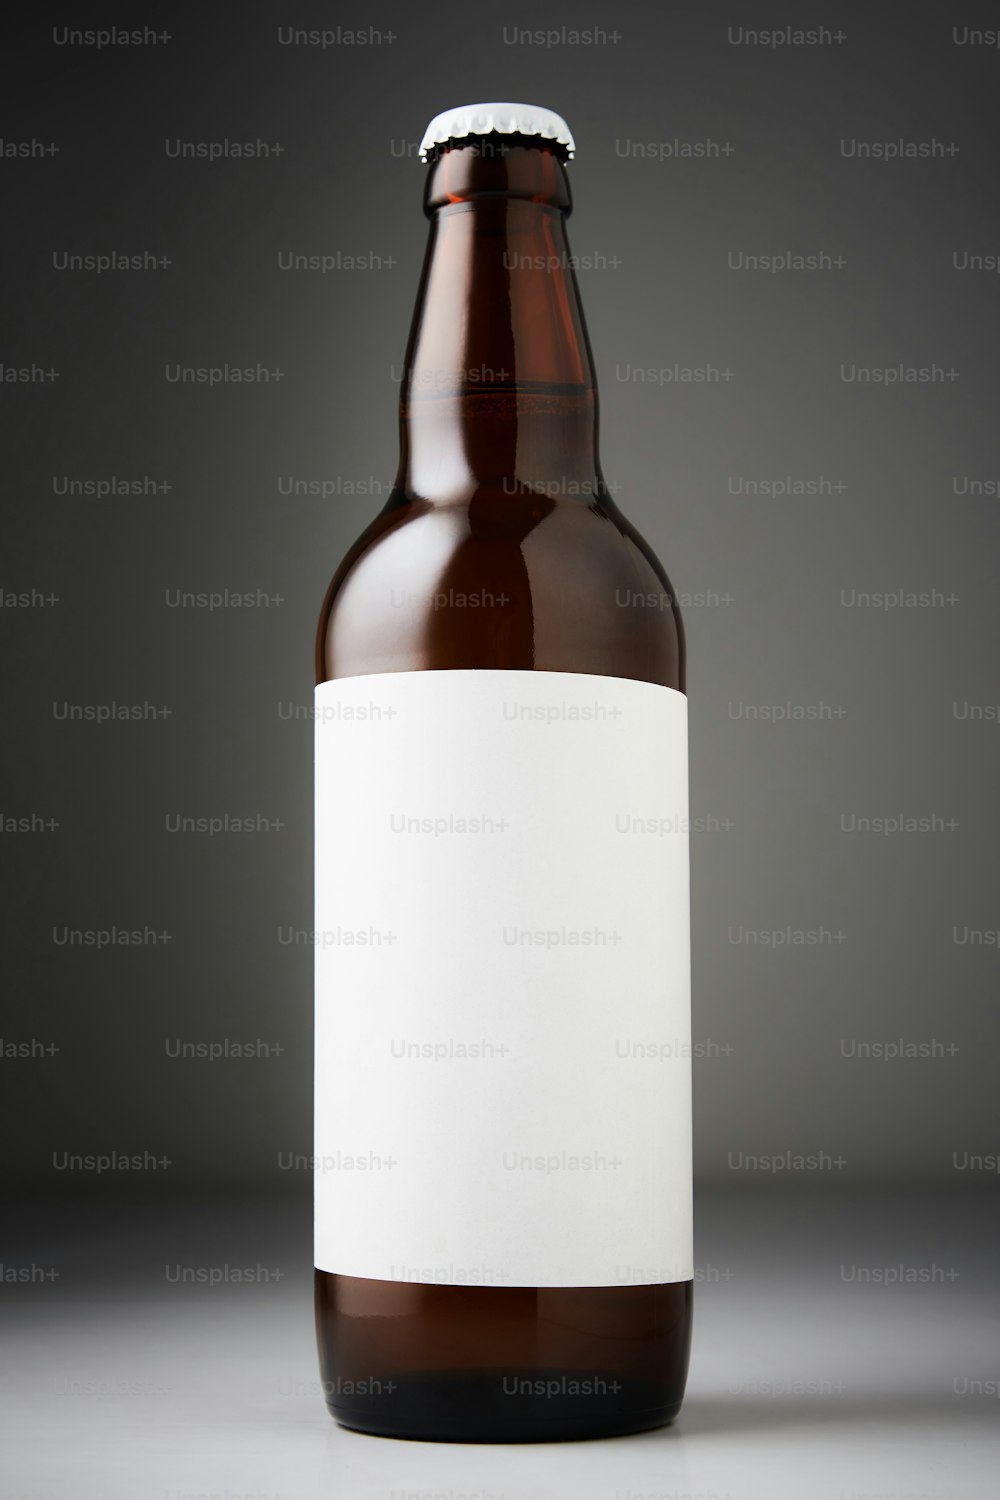 Maqueta de botella de cerveza. Botella llena de cerveza lager con etiquetas en blanco sobre fondo oscuro